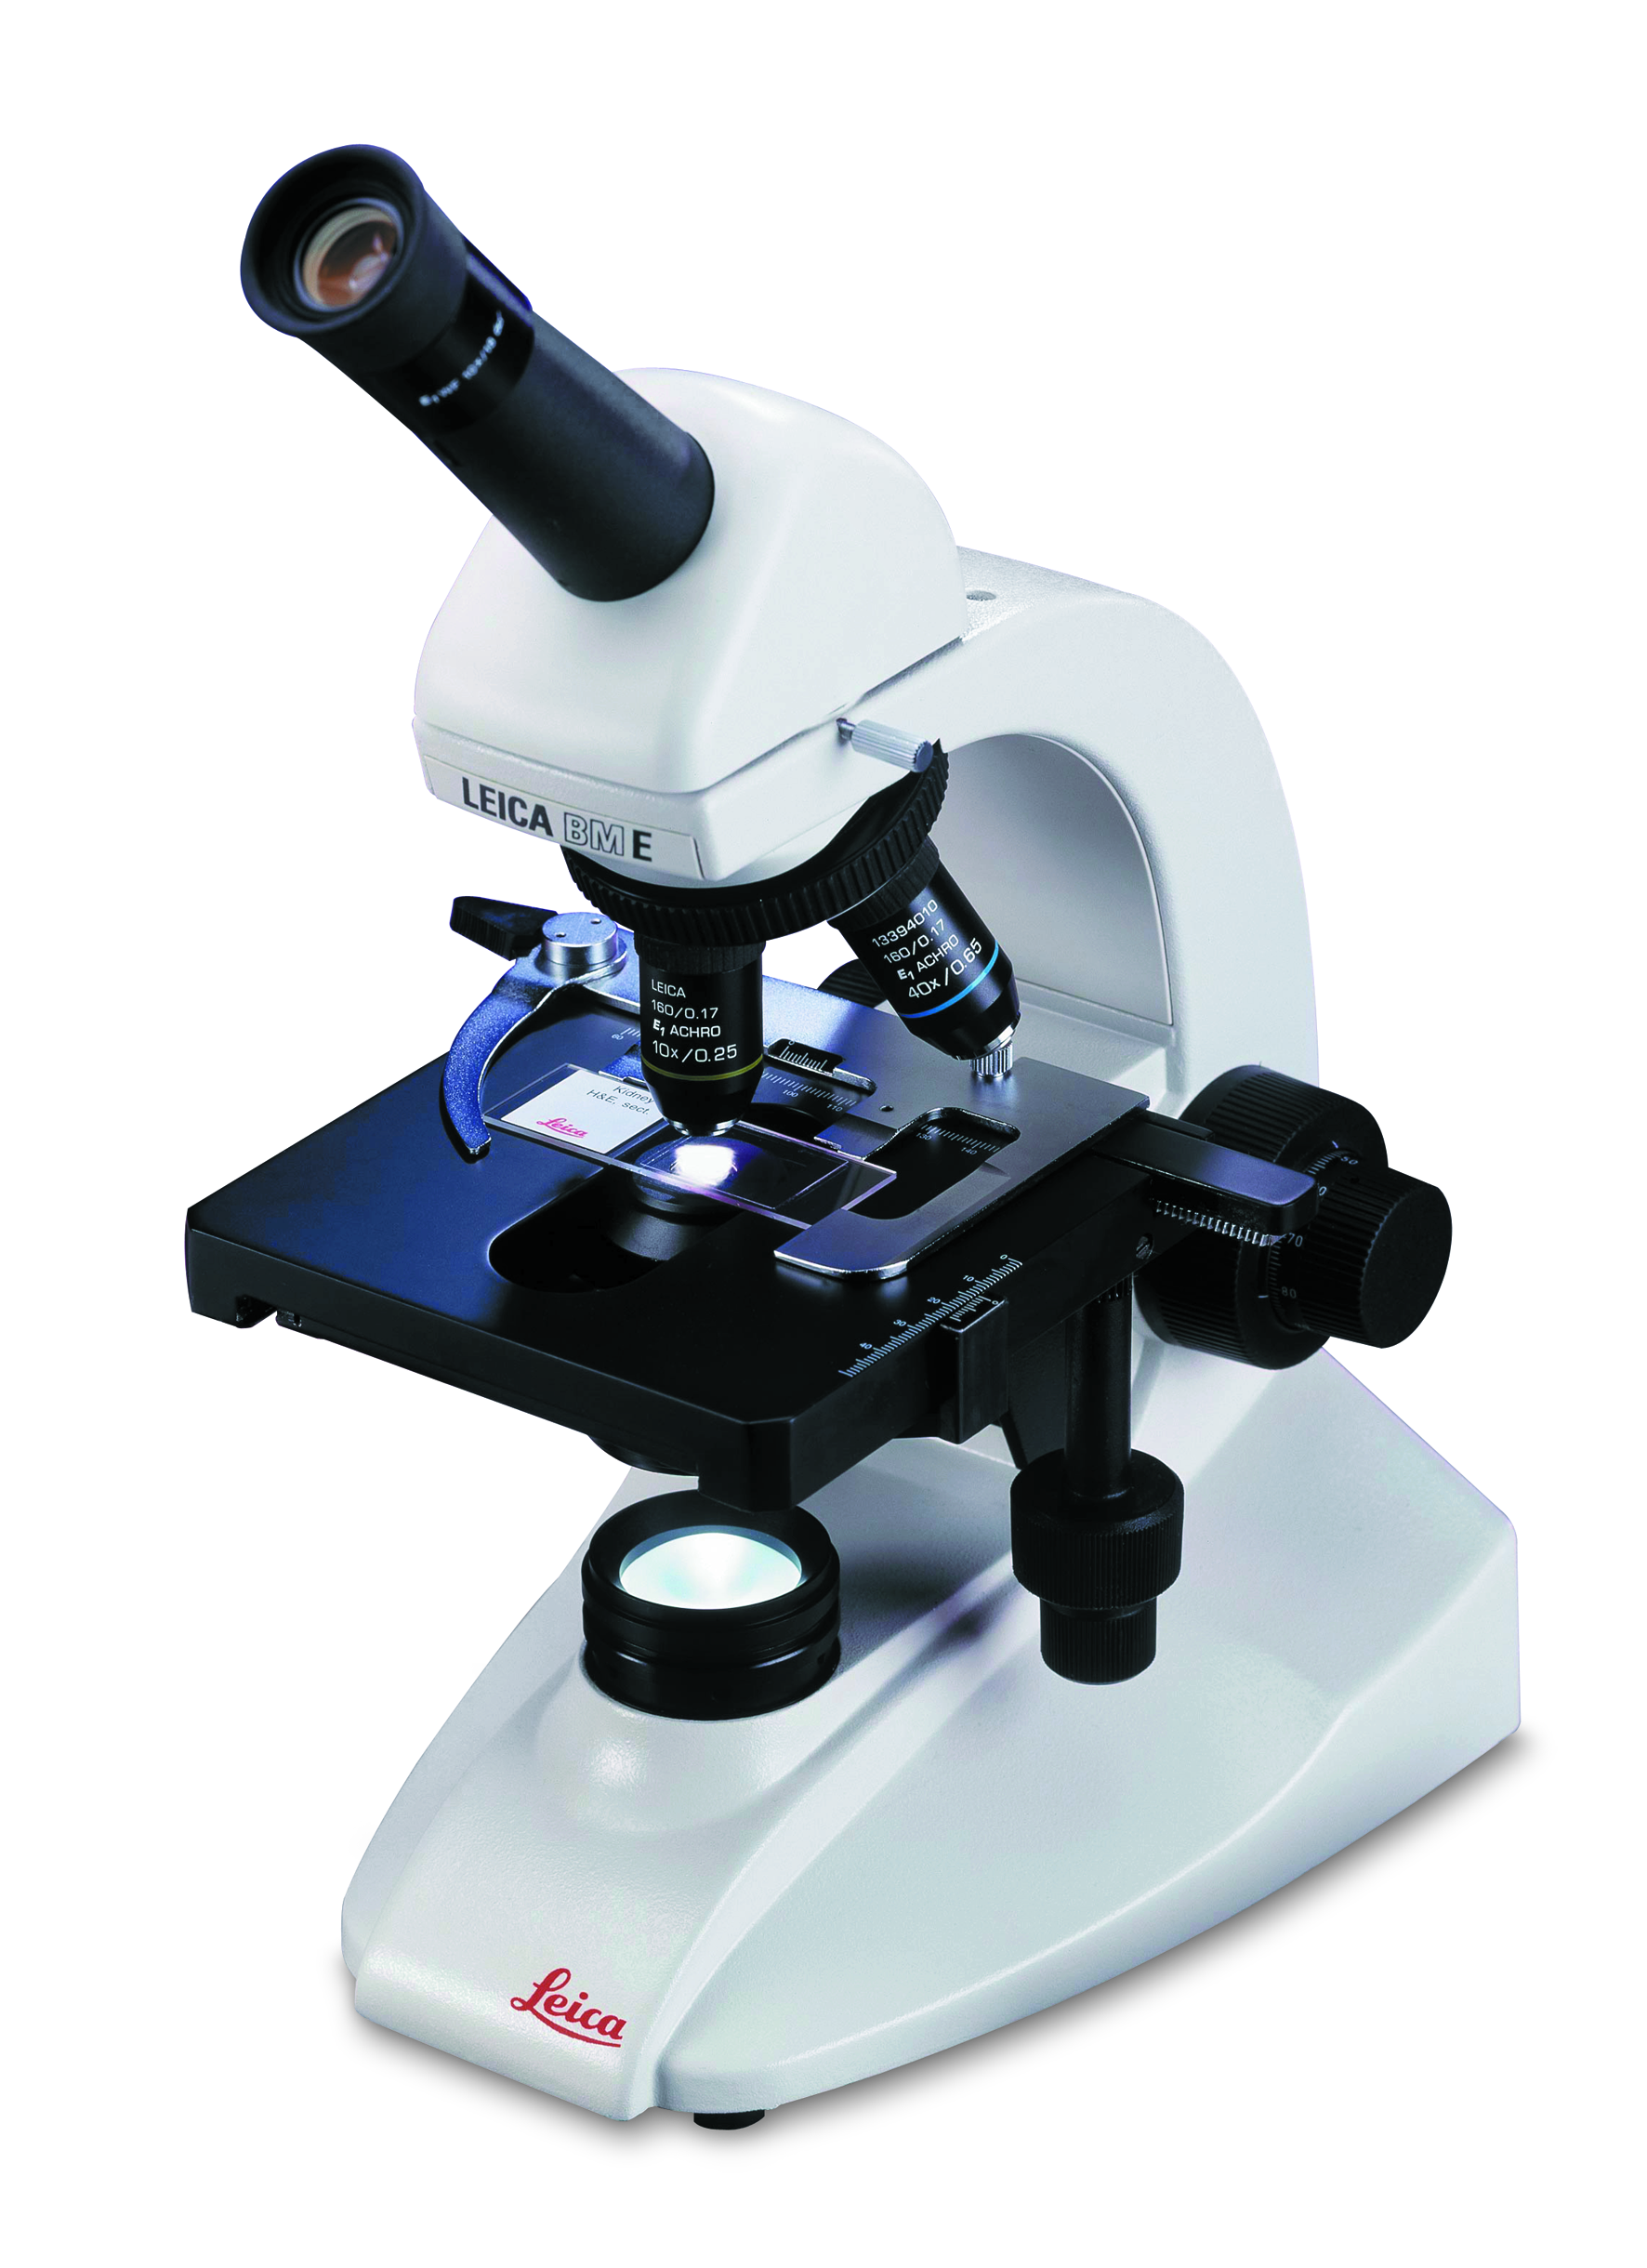 Hervorragende Optik und Langlebigkeit machen das Leica BM E zum besten Ausbildungsmikroskop seiner Art. 